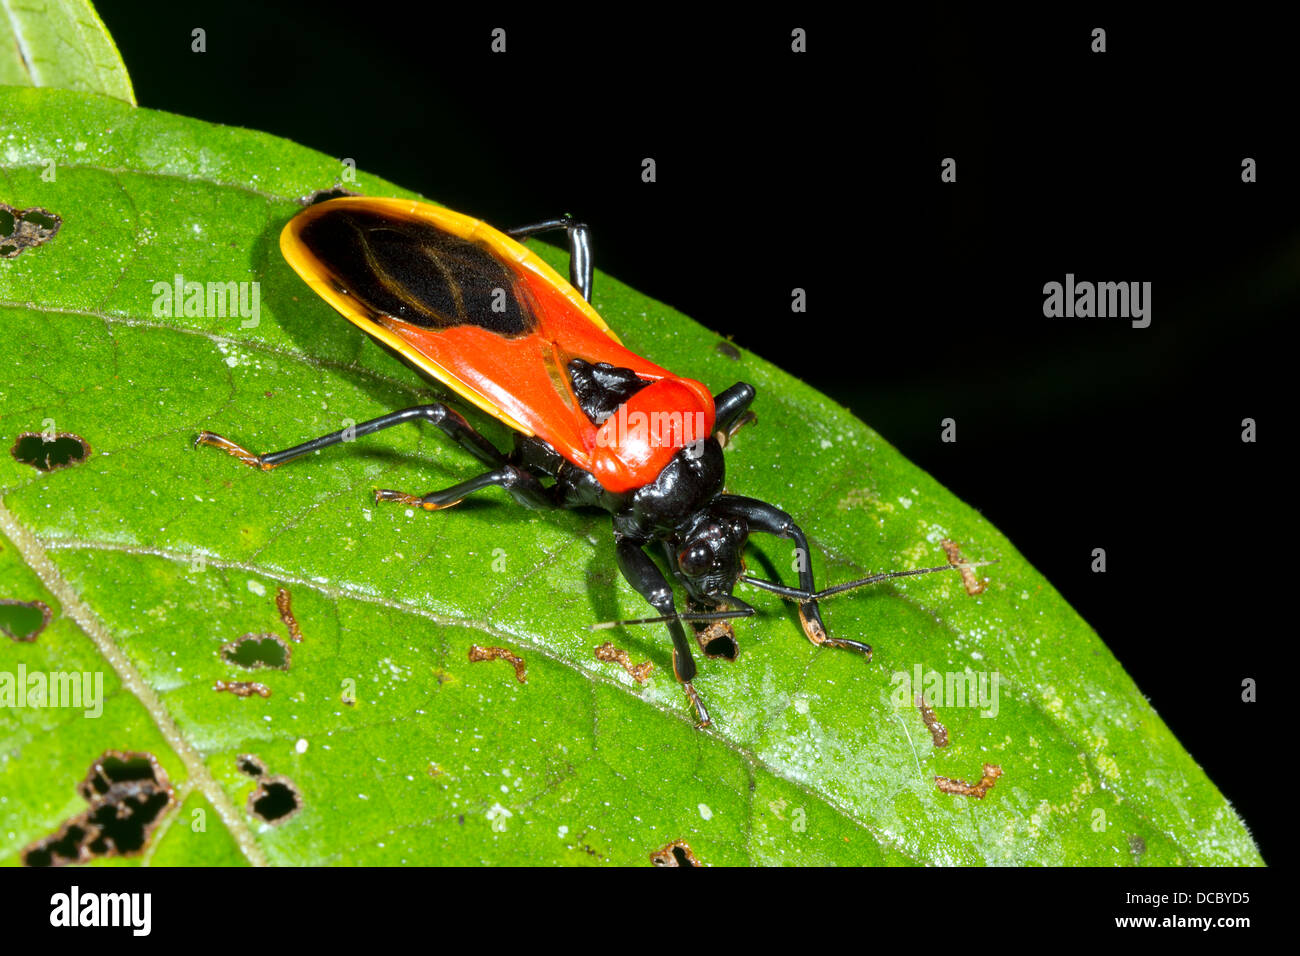 Un assassin bug de couleur vive (famille des Reduviidae) dans la forêt tropicale, l'équateur Banque D'Images